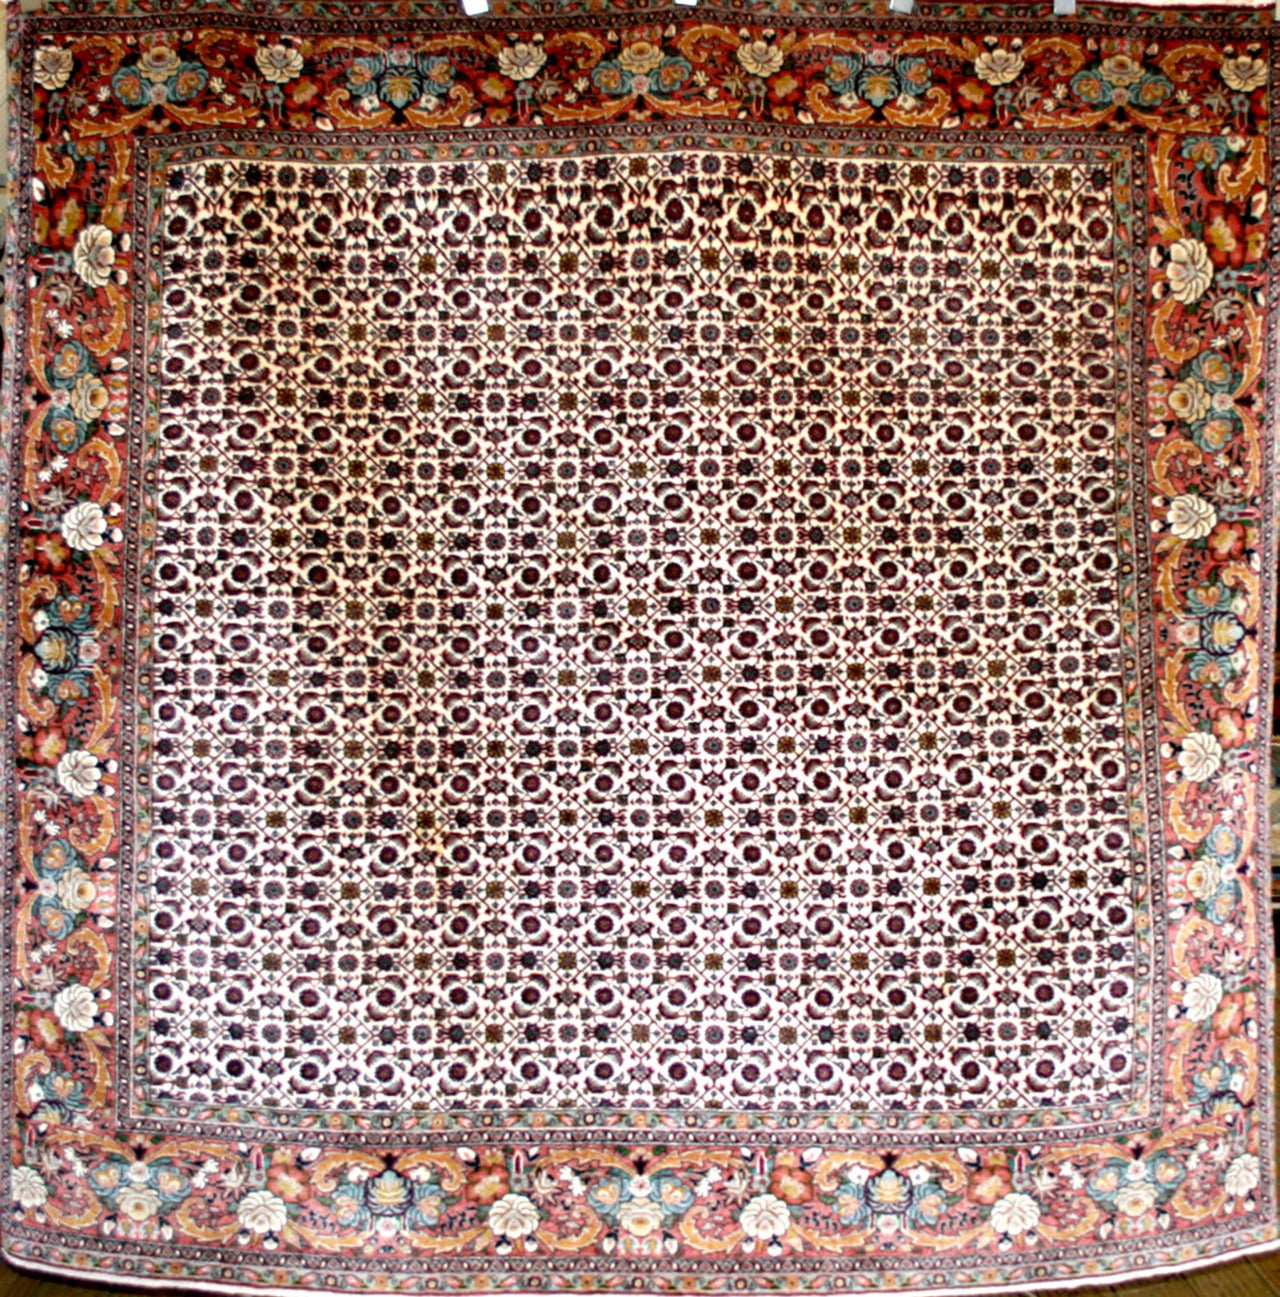 Persian Bijar Square Rug